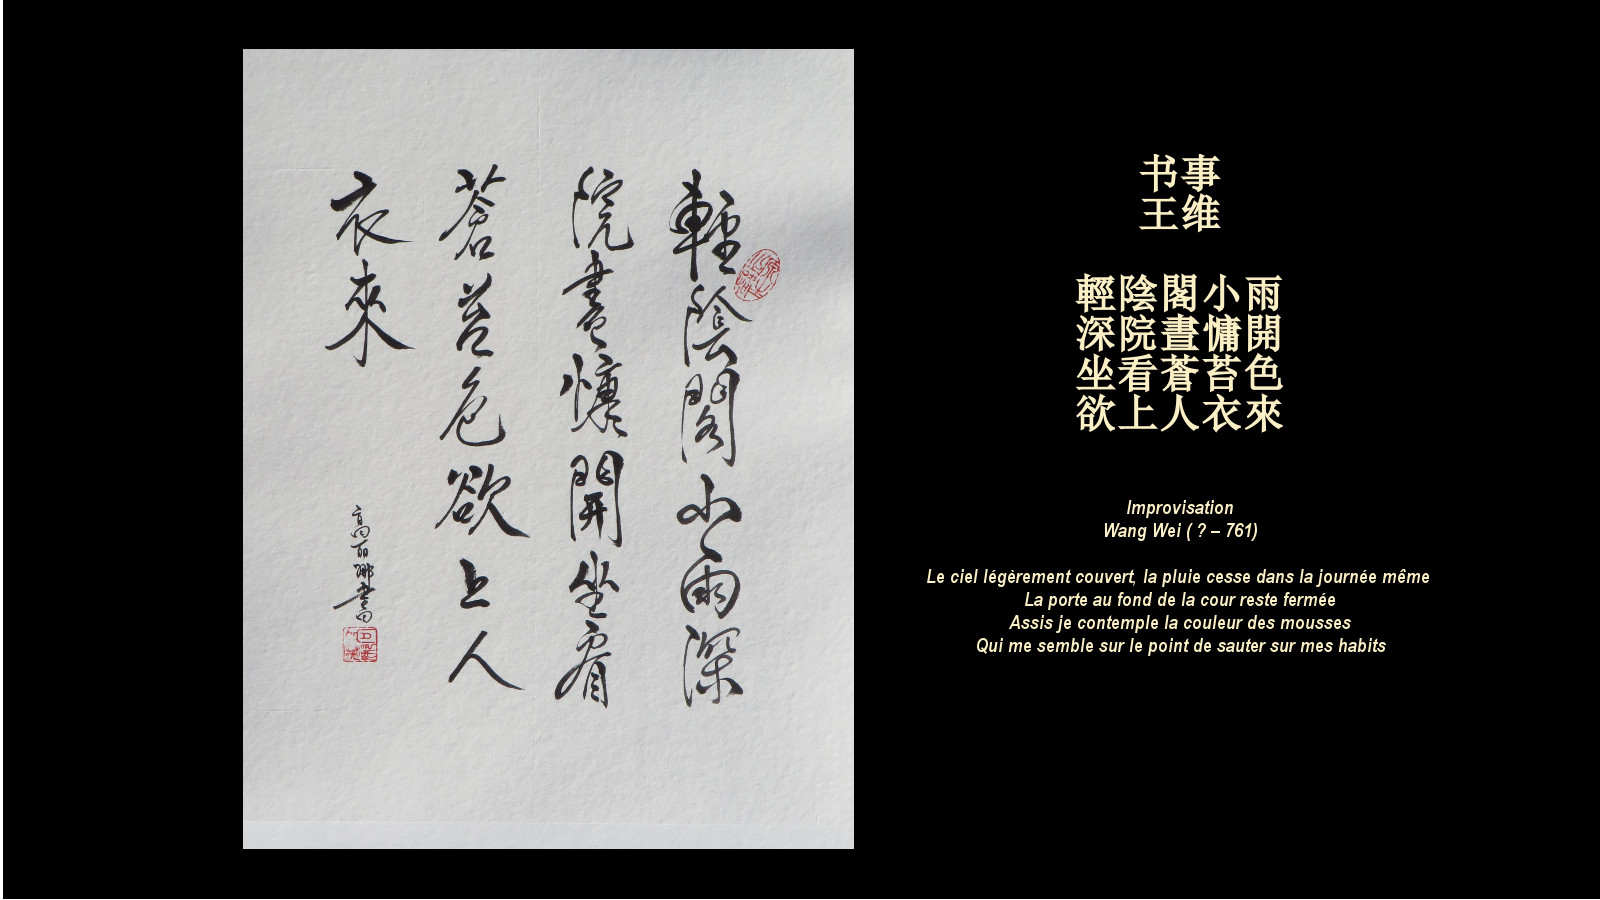 poème de Wang Wei en style xingshu 65 x 50 - 2015 calligraphié par Corinne Leforestier